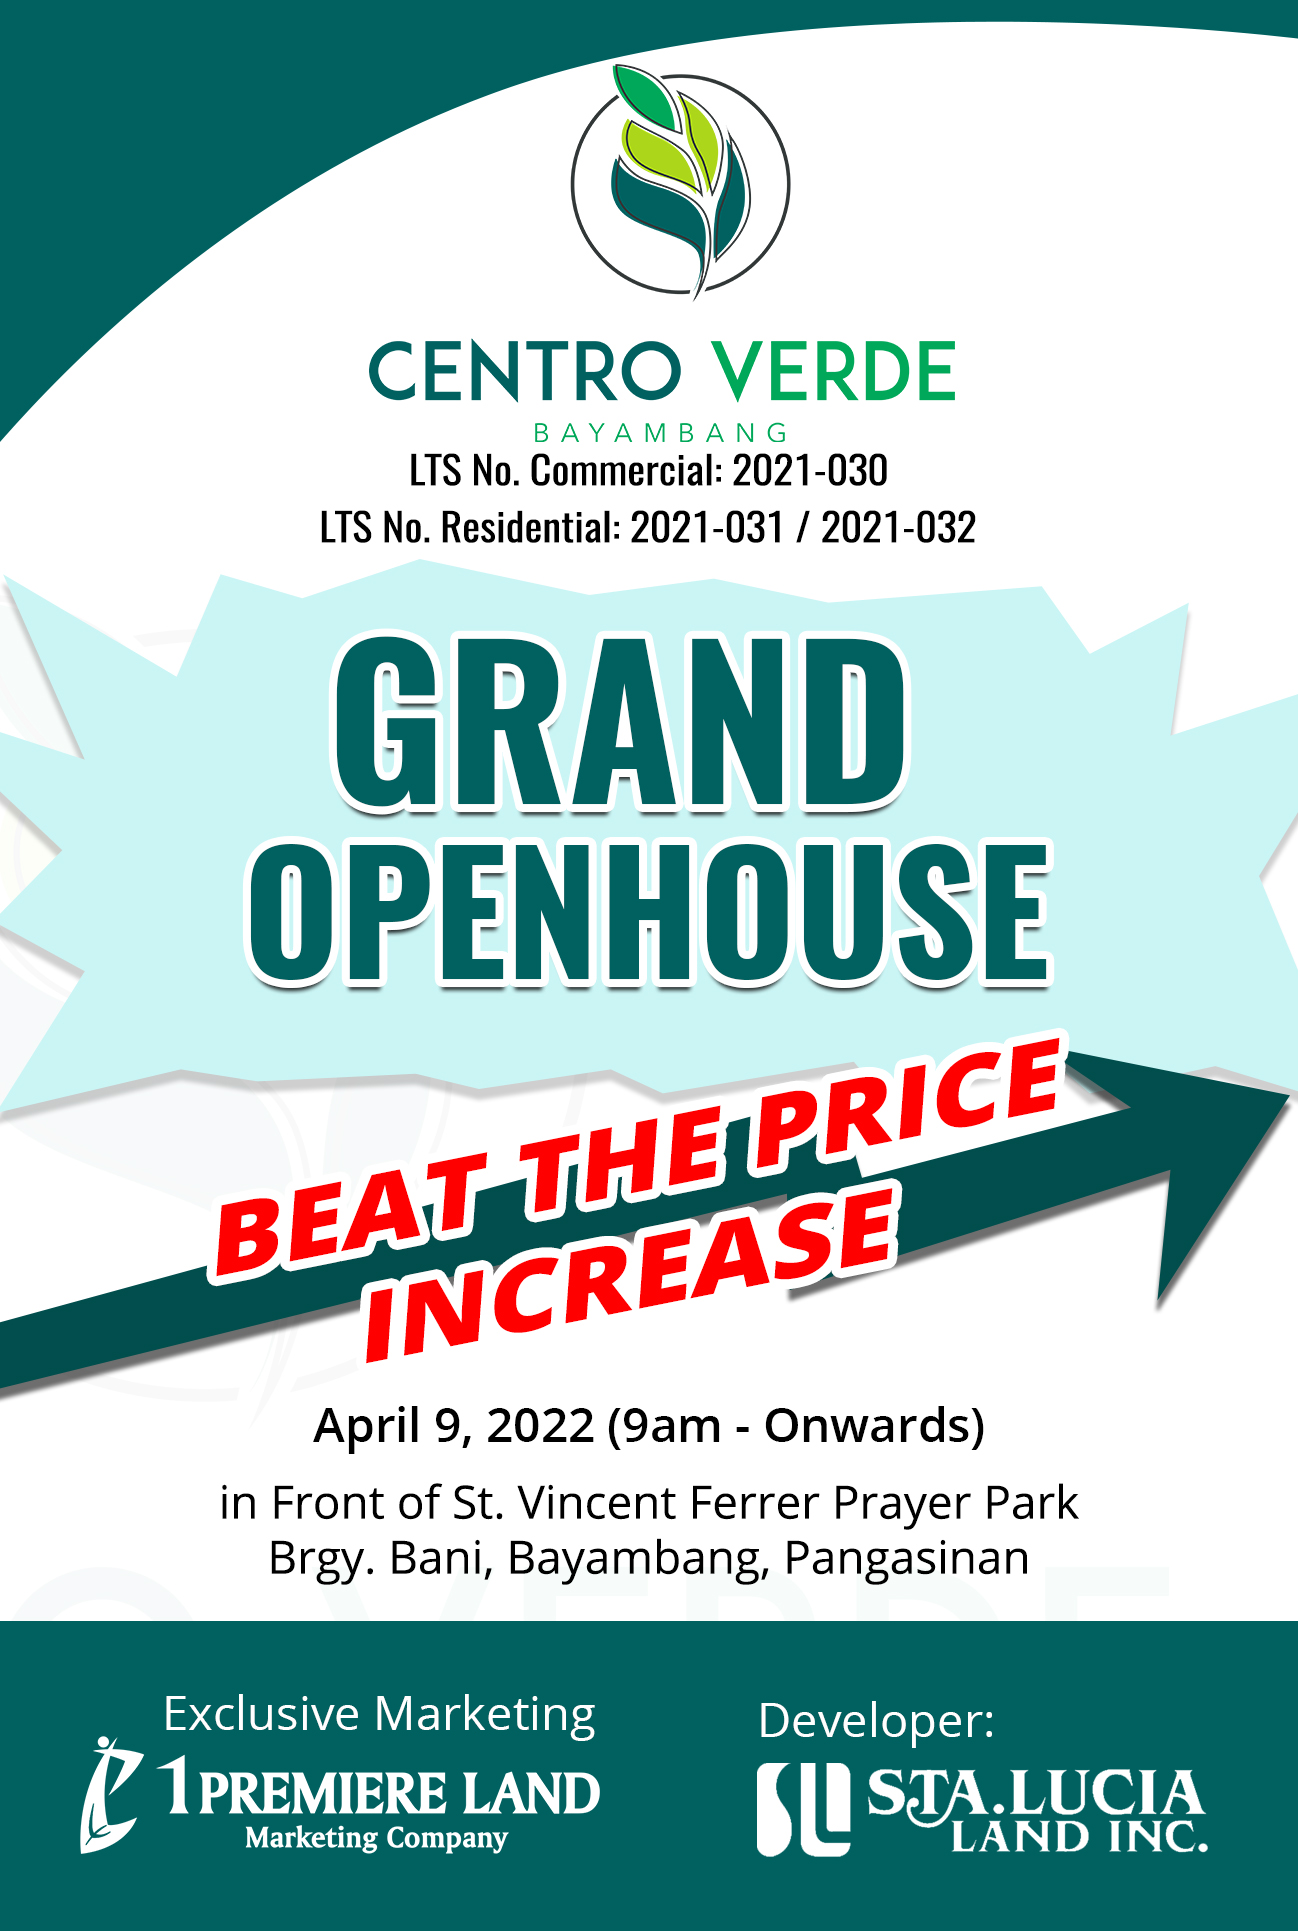 Centro Verde Grand Openhouse Invitation